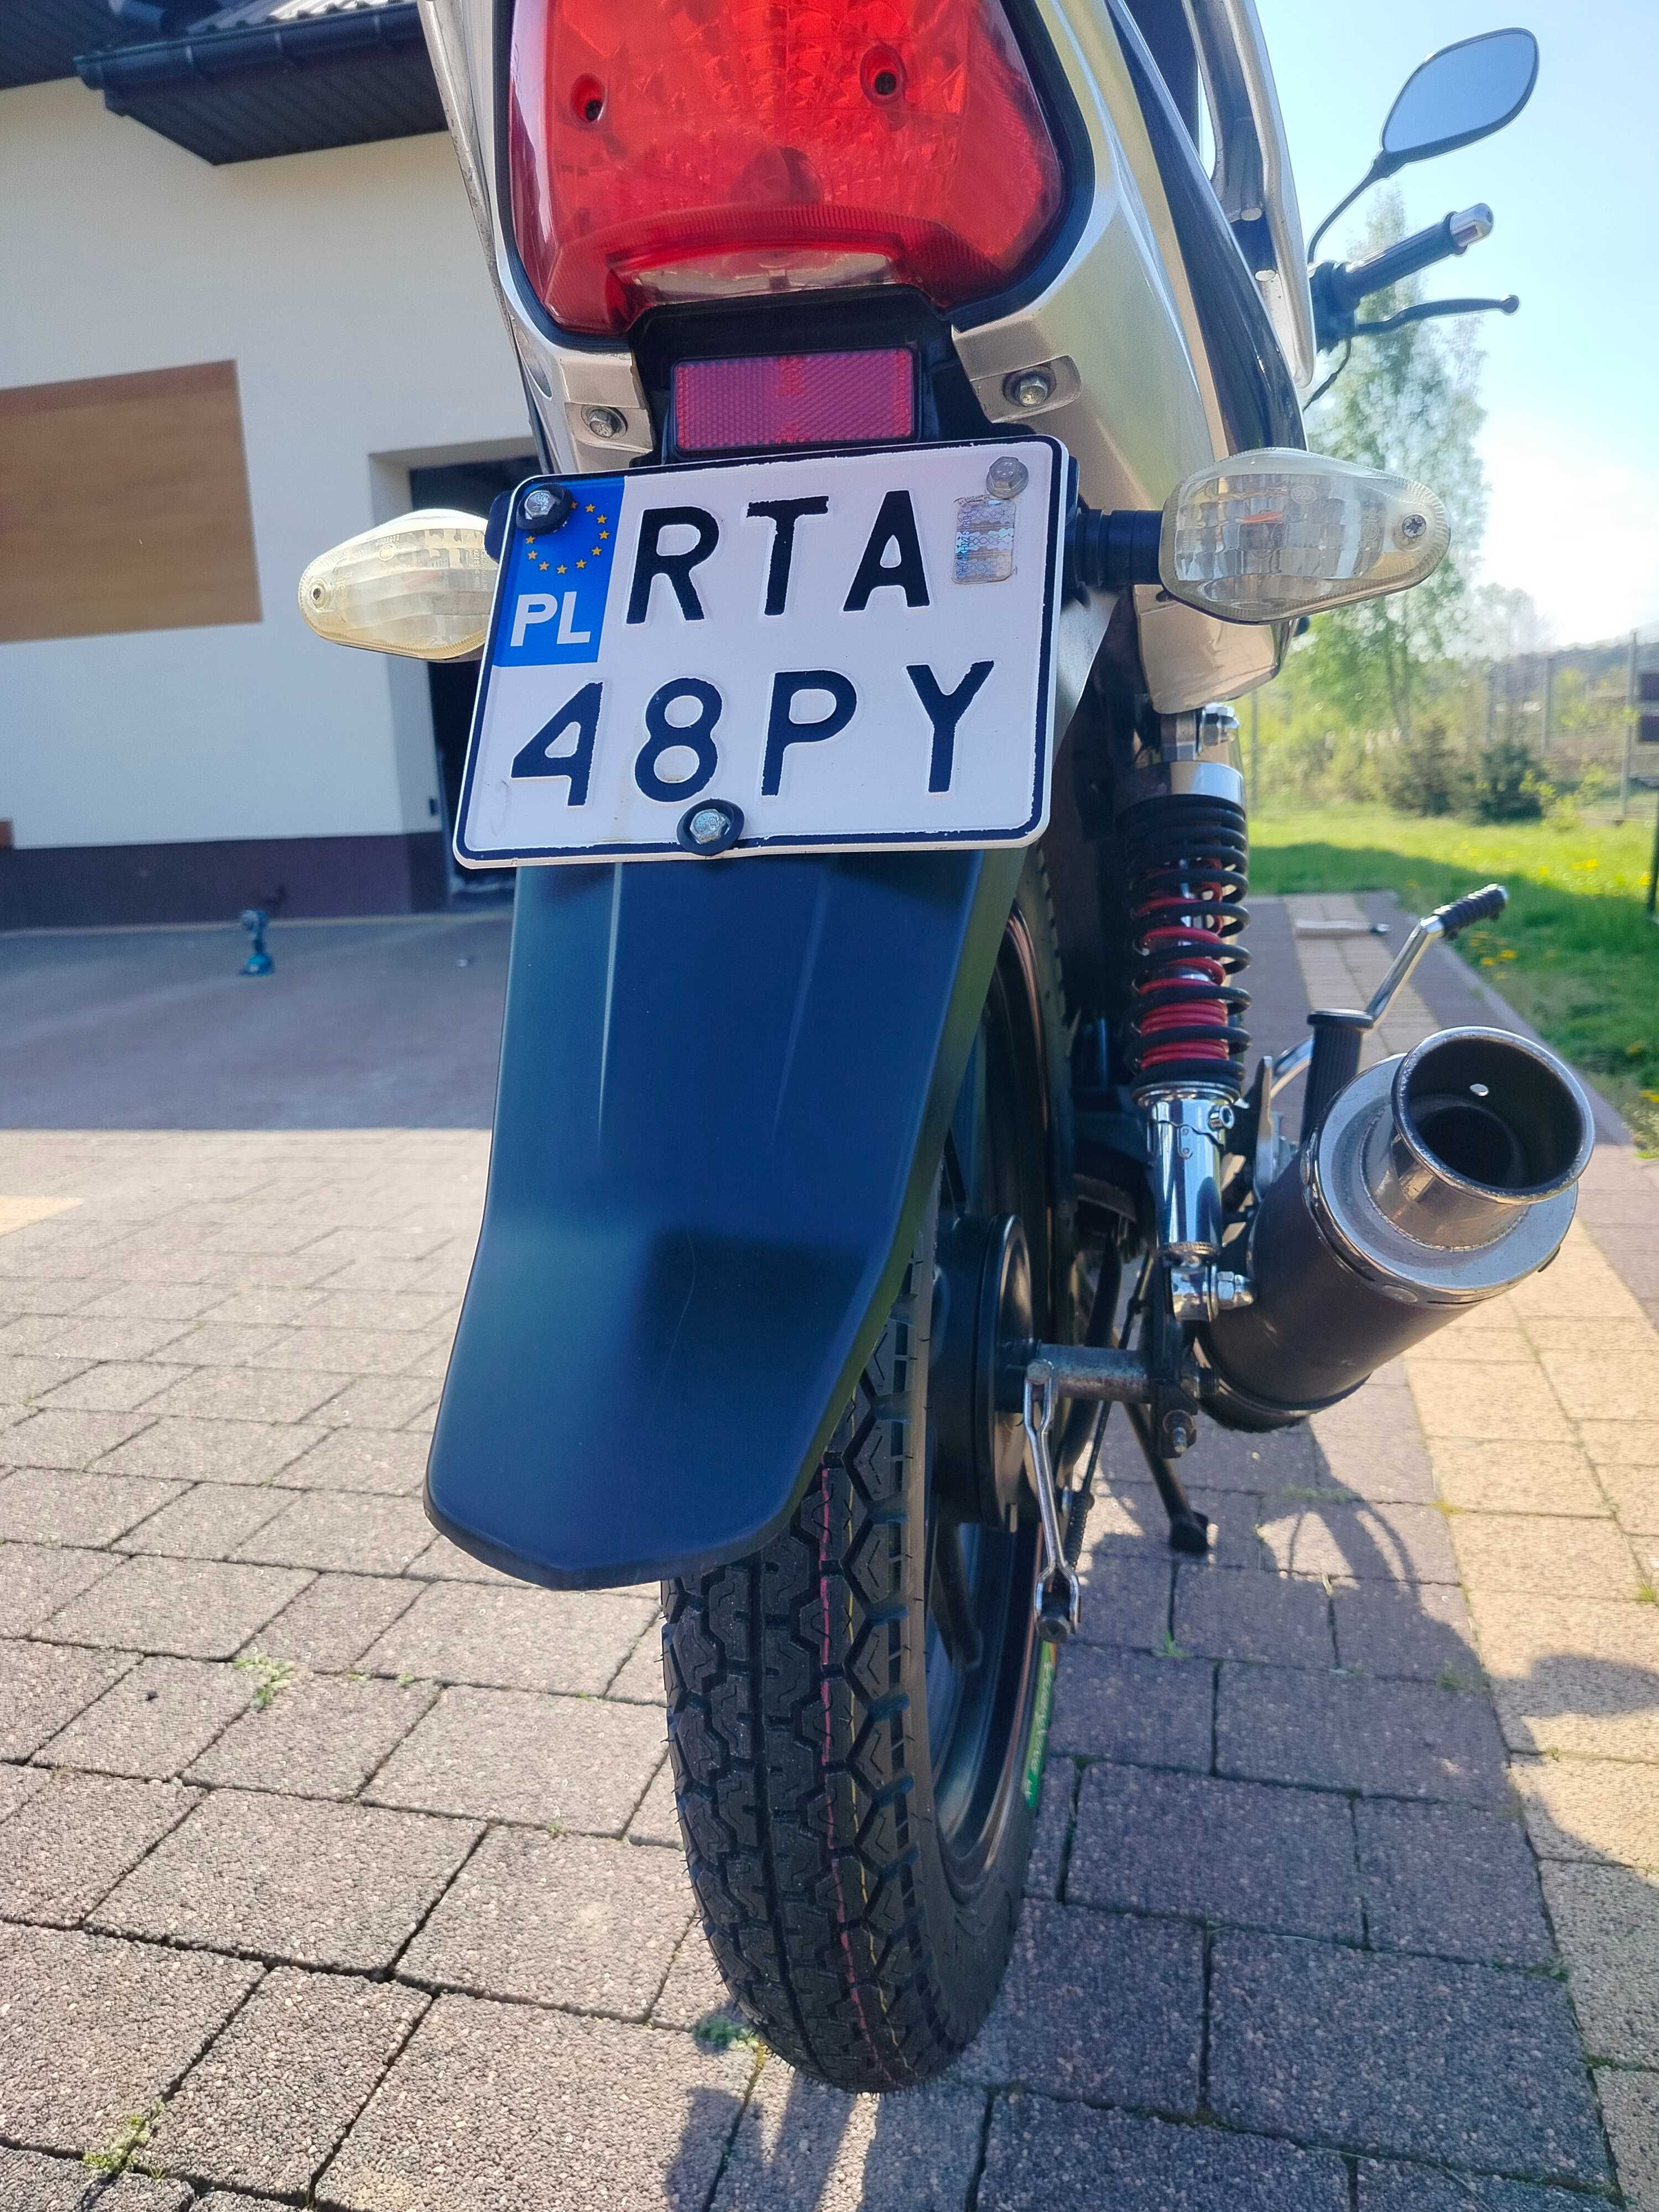 Motocykl Junak RS